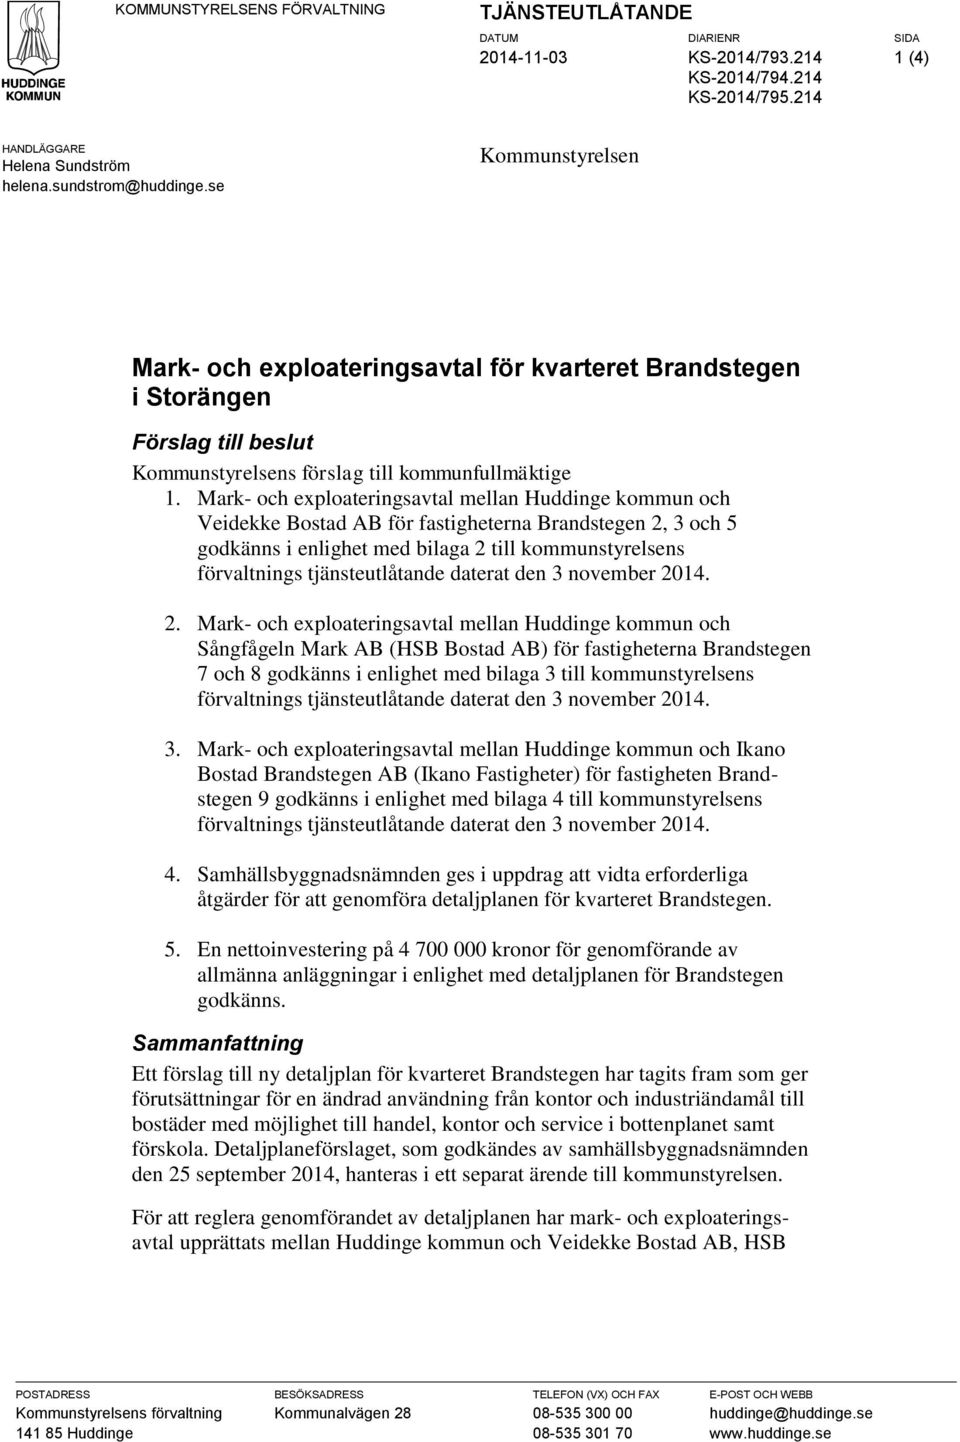 Mark- och exploateringsavtal mellan Huddinge kommun och Veidekke Bostad AB för fastigheterna Brandstegen 2, 3 och 5 godkänns i enlighet med bilaga 2 till kommunstyrelsens förvaltnings